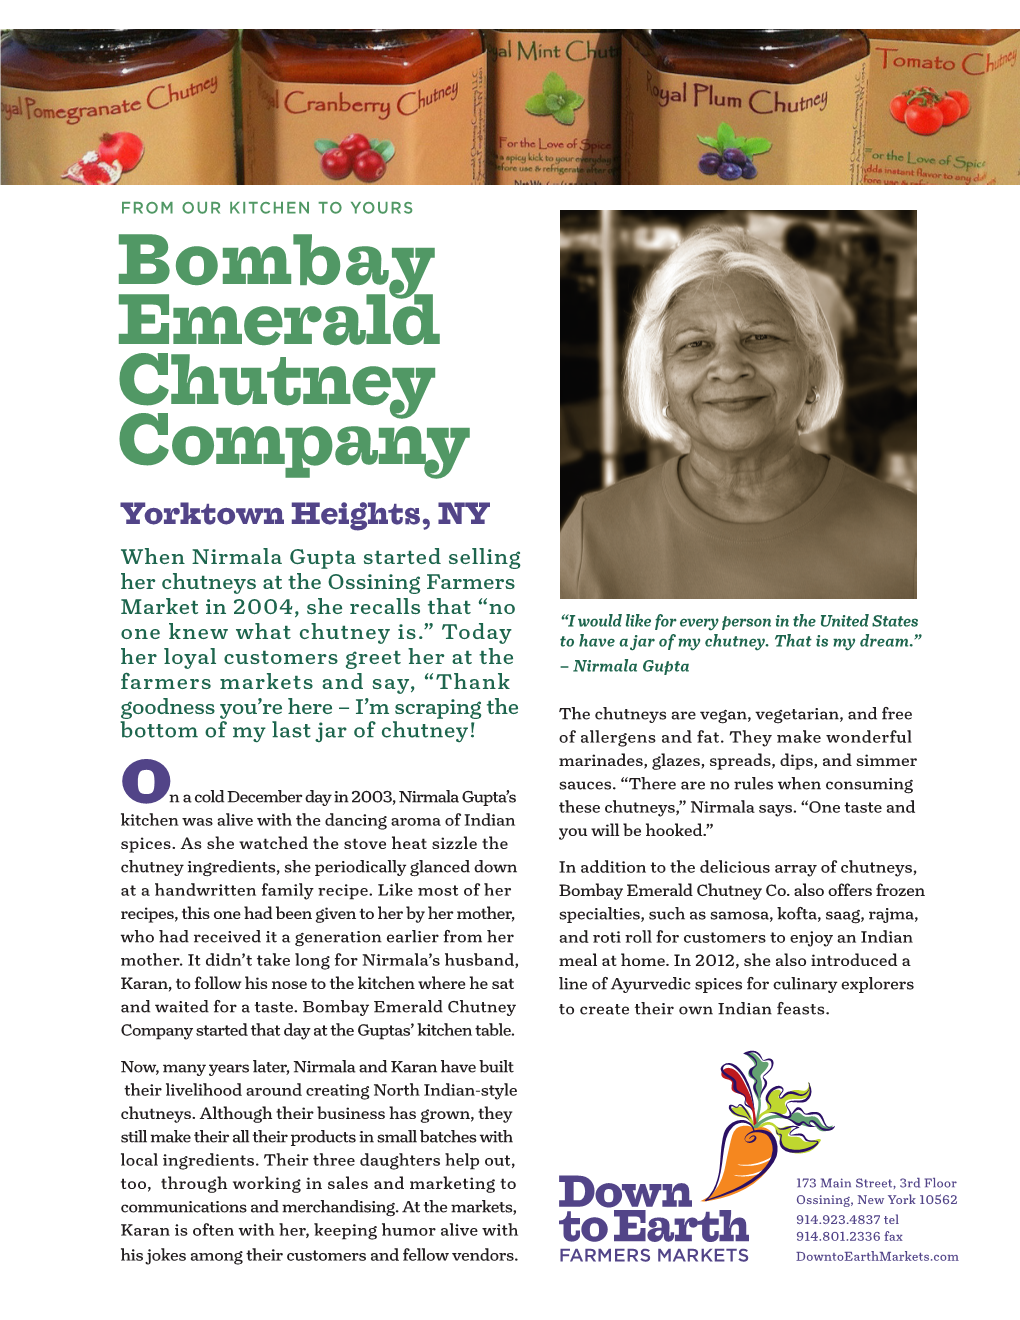 Bombay Emerald Chutney Company